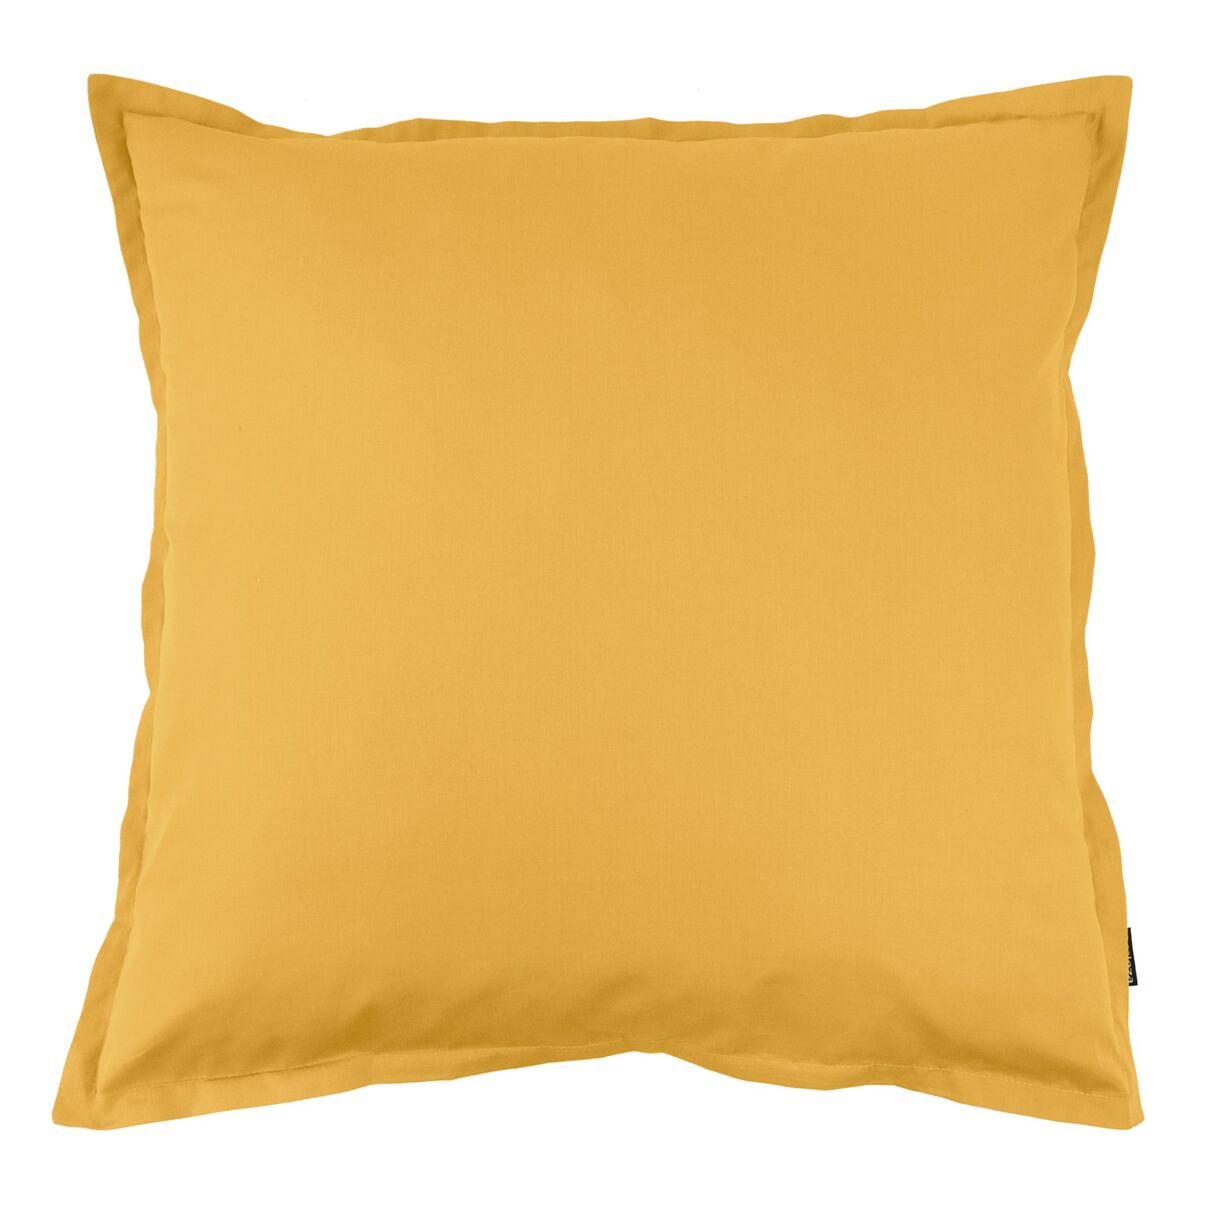 Funda de almohada cuadrada de percal de algodón (80 x 80 cm) Cali Amarillo mostaza